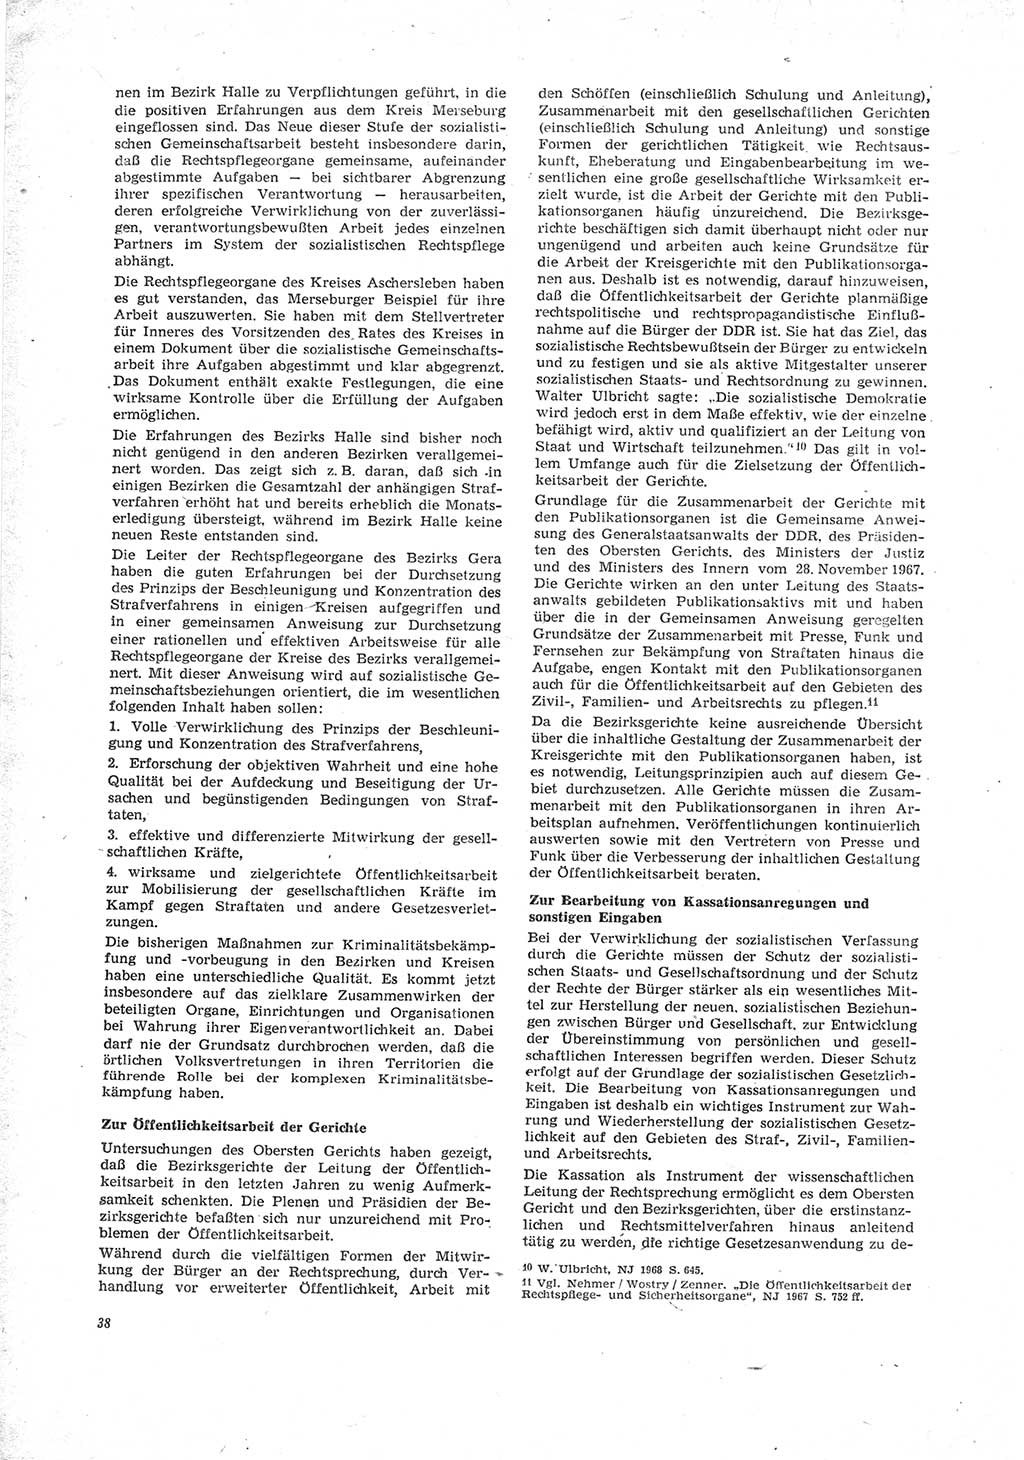 Neue Justiz (NJ), Zeitschrift für Recht und Rechtswissenschaft [Deutsche Demokratische Republik (DDR)], 23. Jahrgang 1969, Seite 38 (NJ DDR 1969, S. 38)